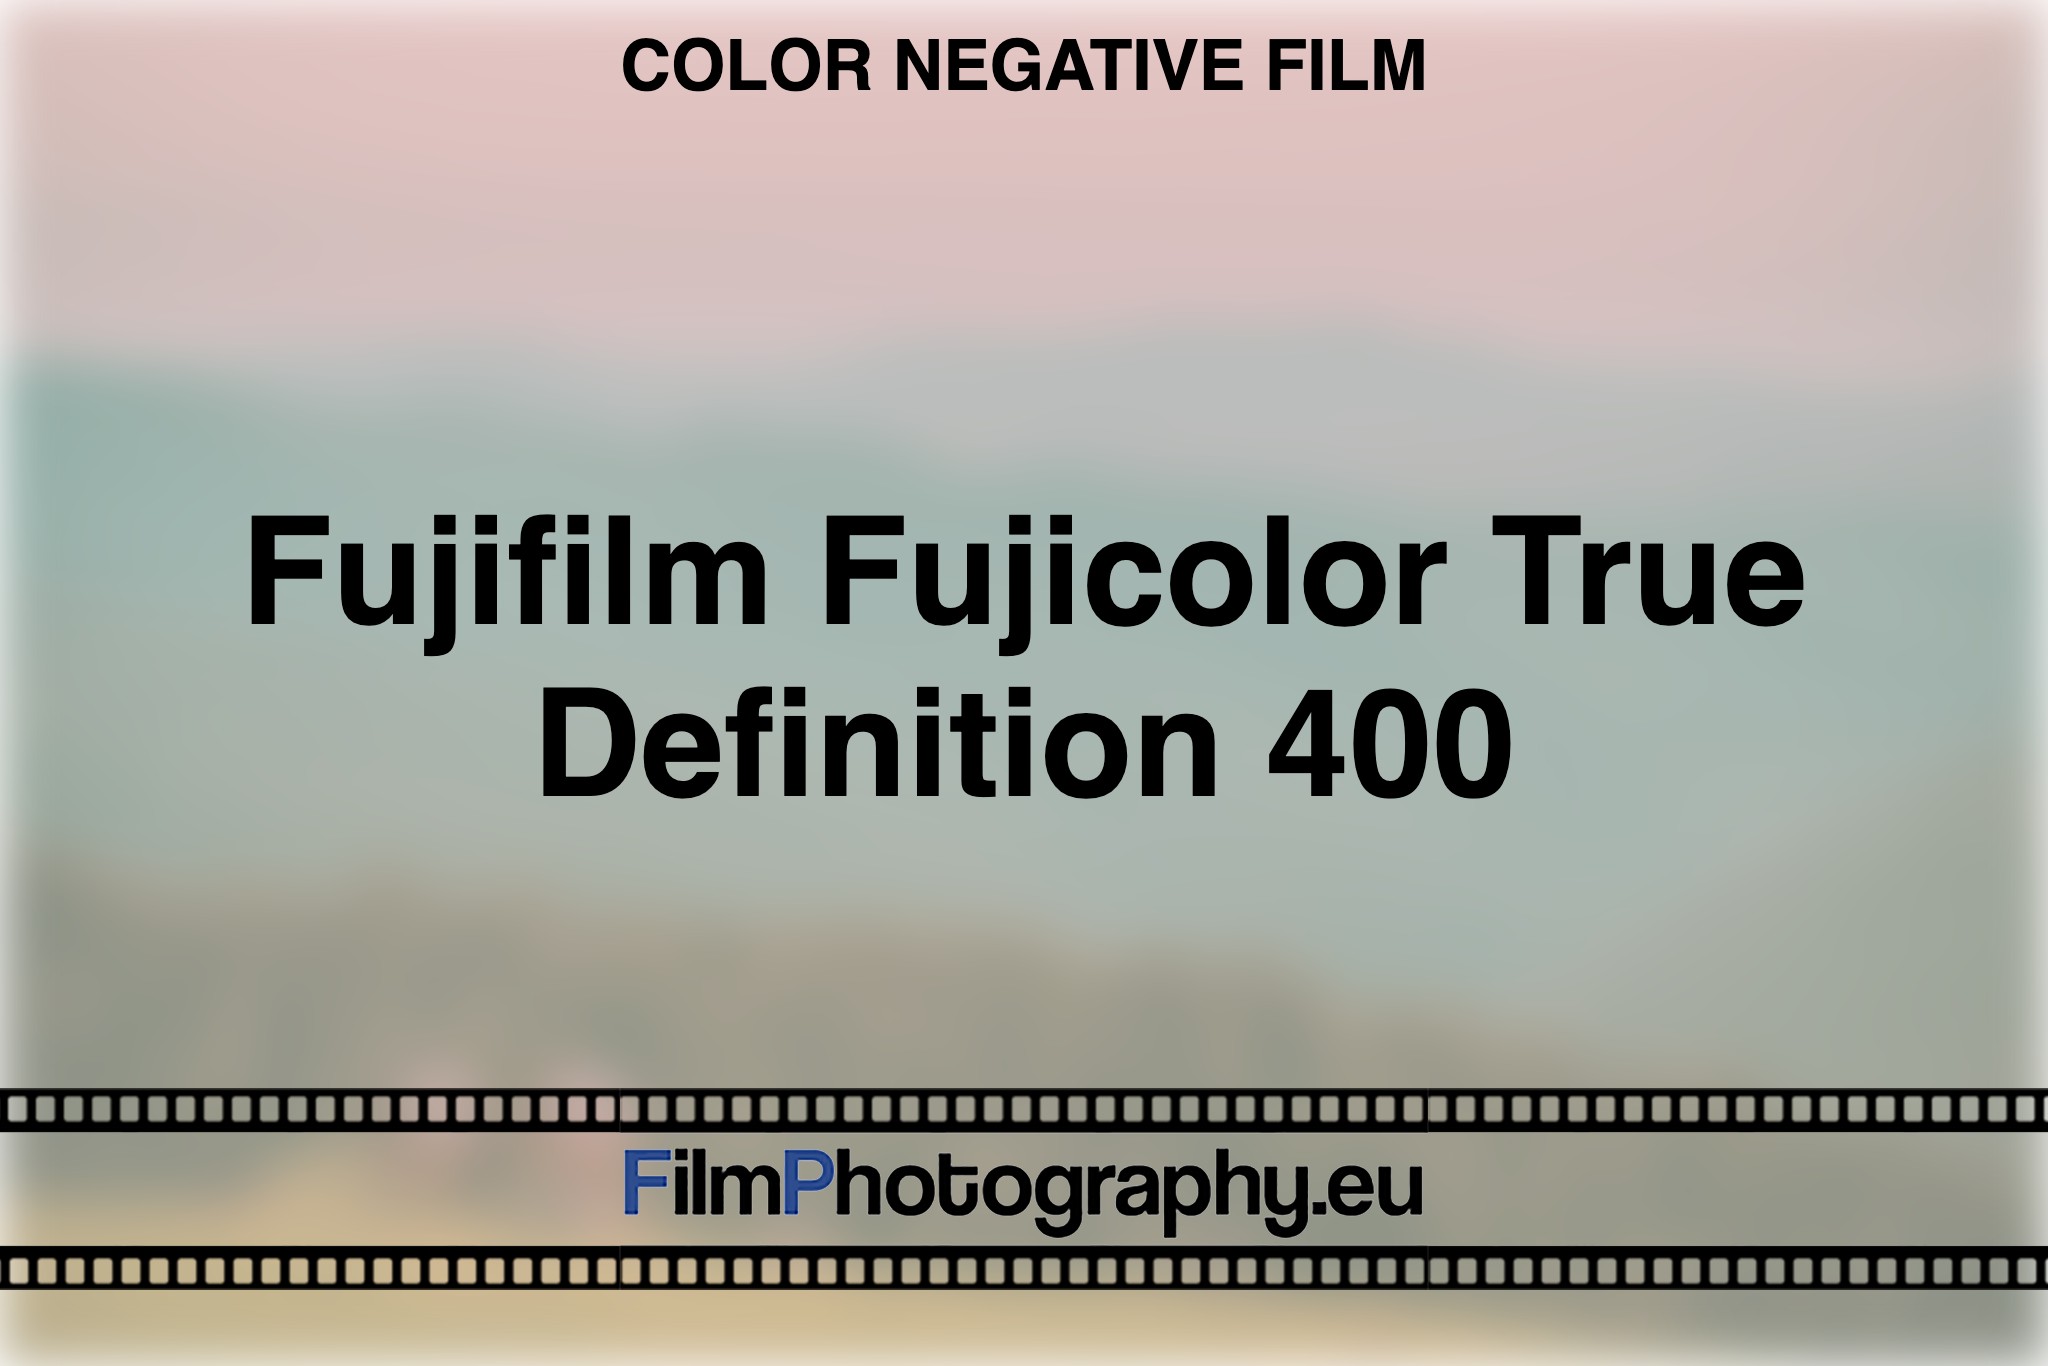 fujifilm-fujicolor-true-definition-400-color-negative-film-bnv